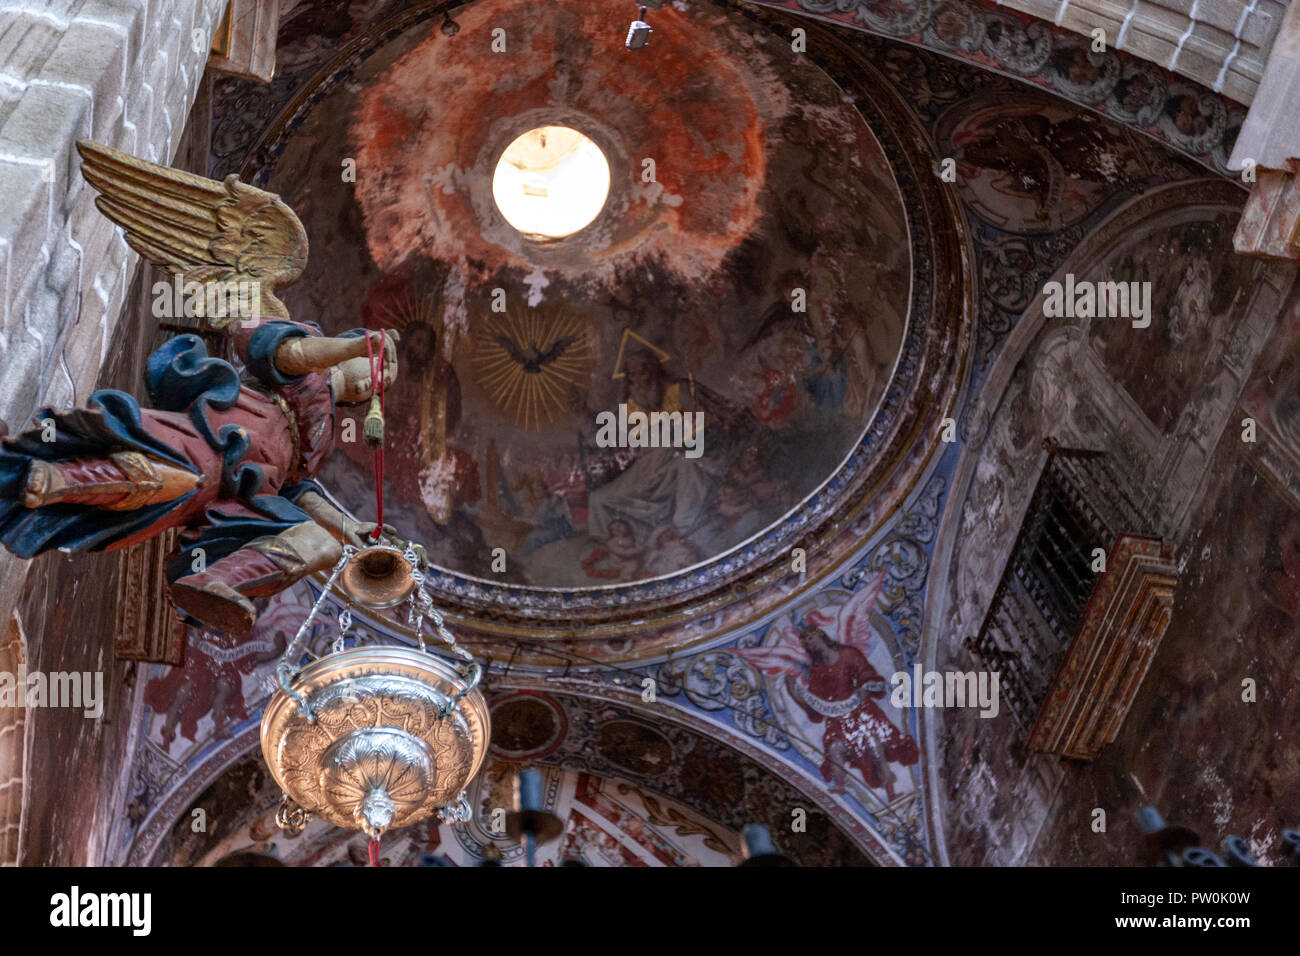 El culto a San Miguel Arcángel en Toledo y provincia